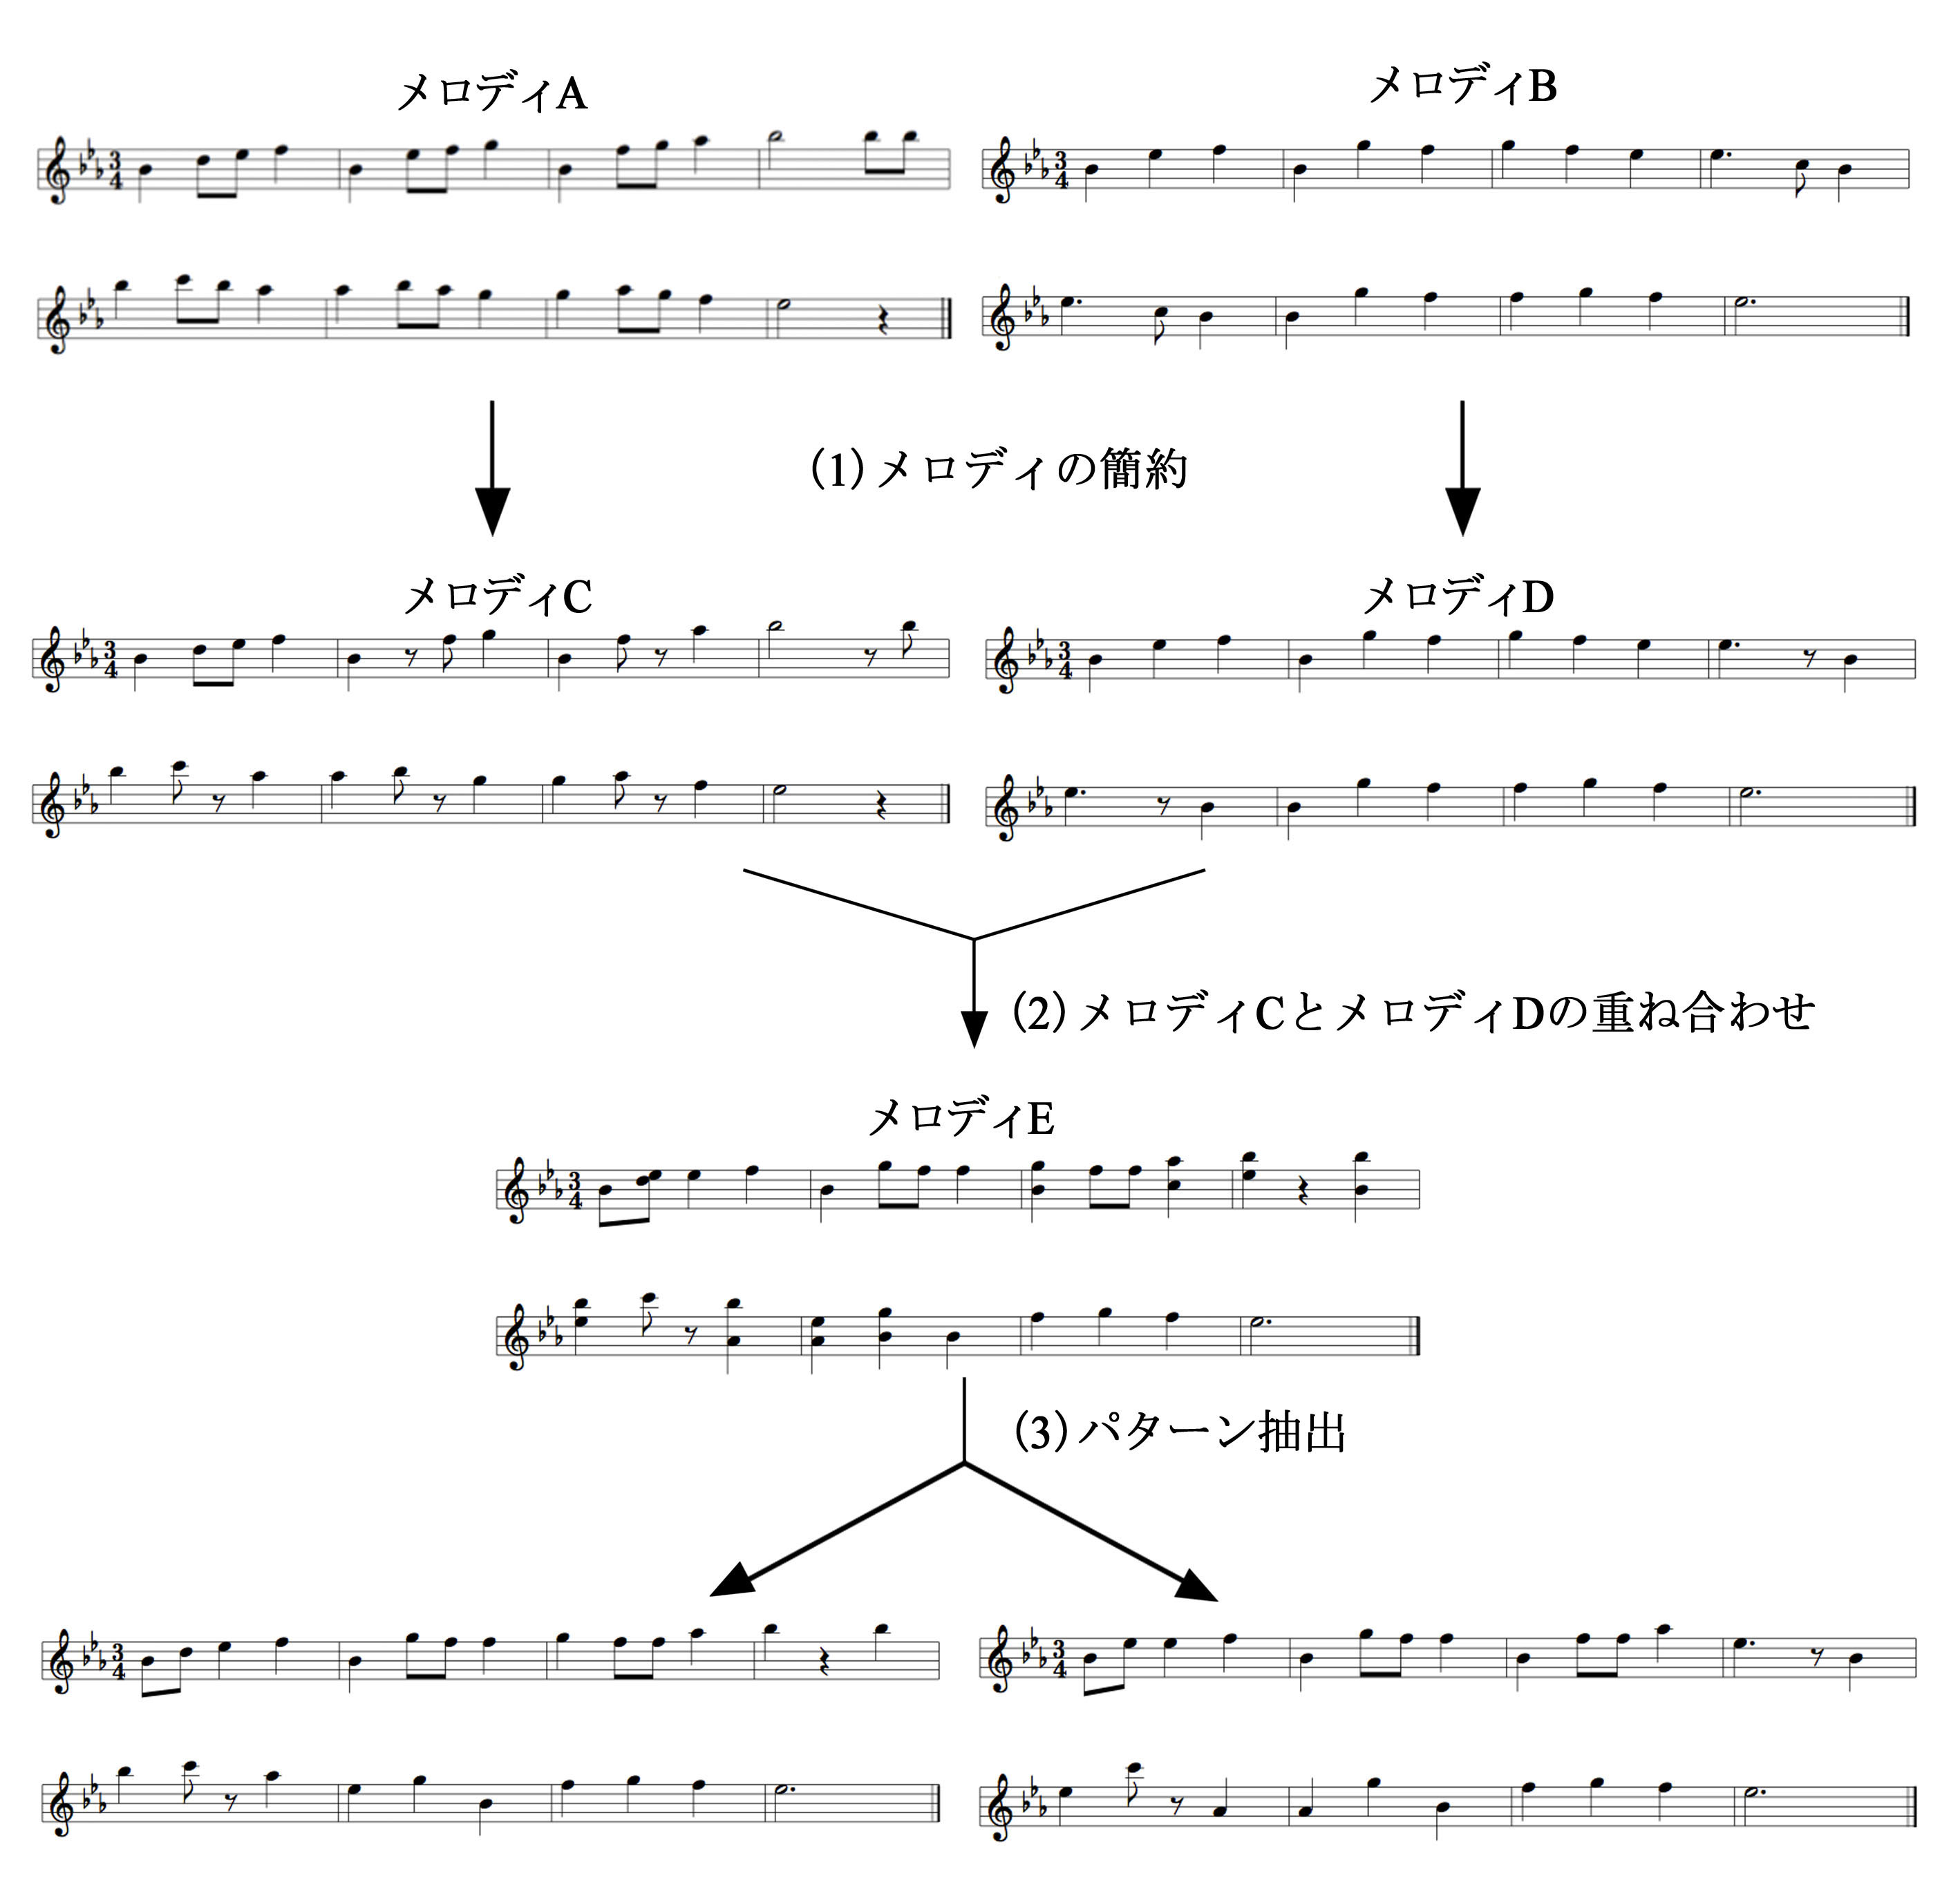 メロディモーフィング手法を用いた初学者向けの作曲支援システムの研究 (211)